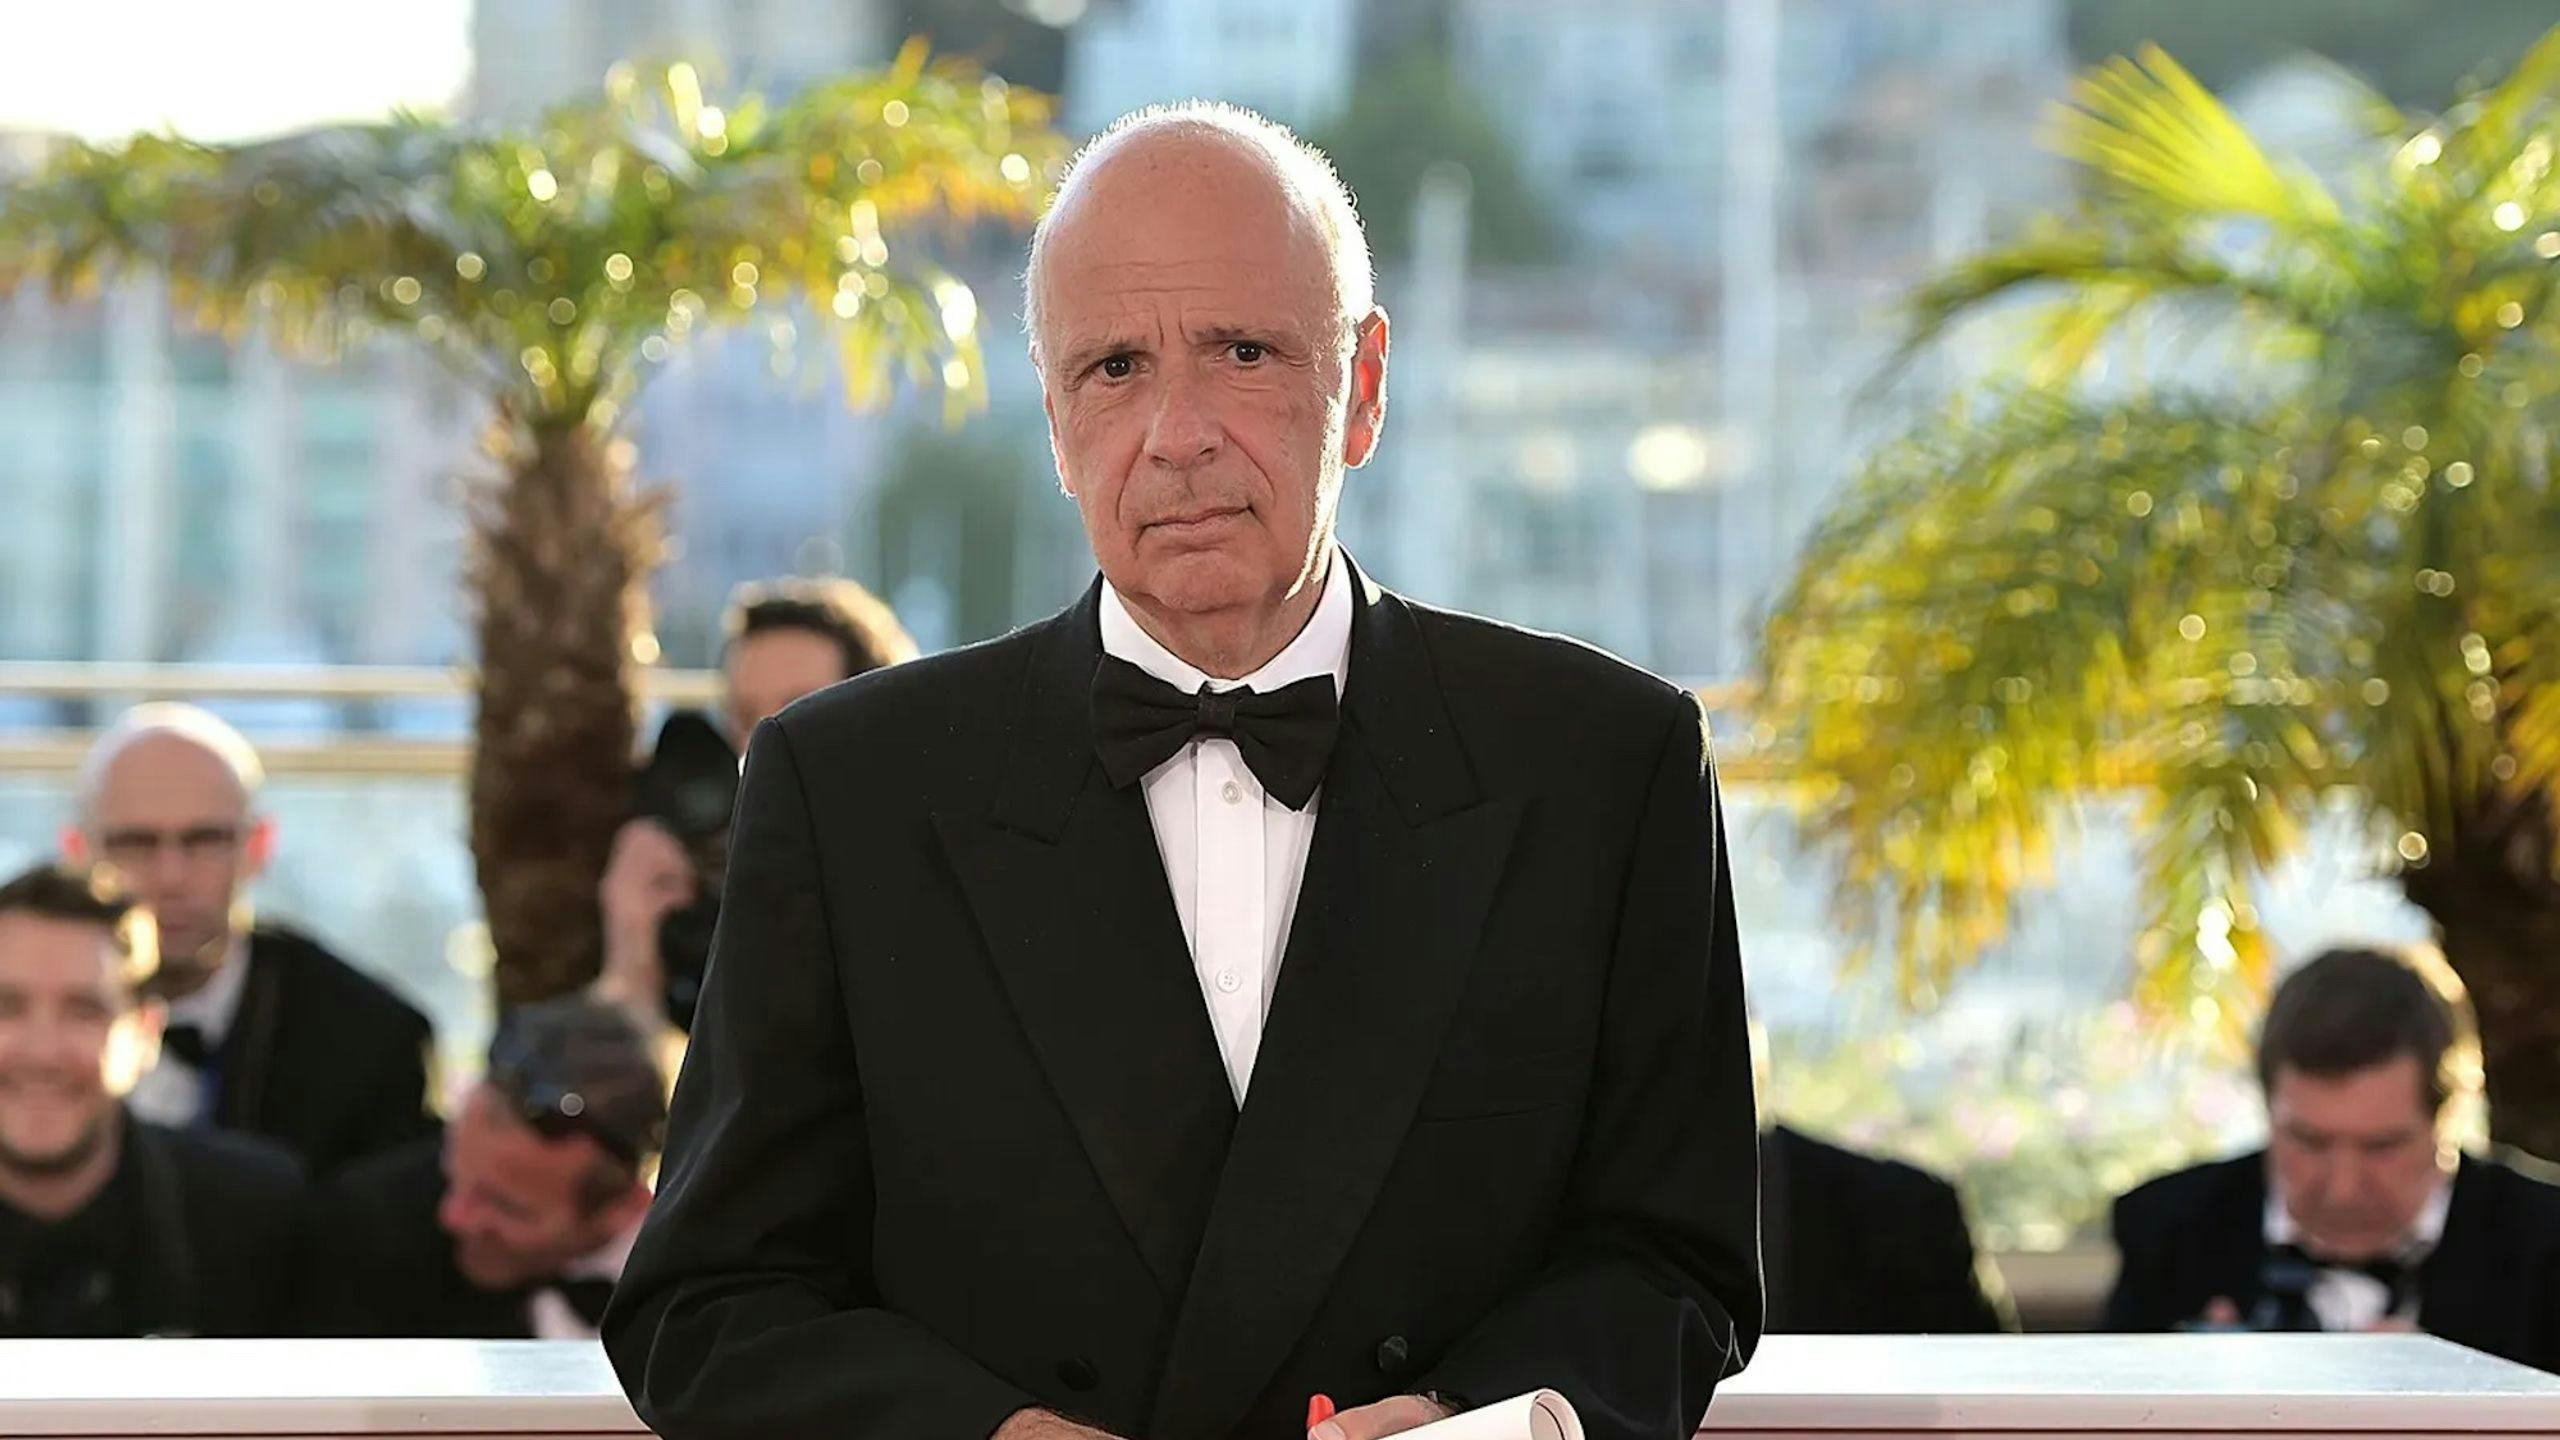 El productor Alain Sarde recogiendo un premio en el Festival de Cannes por 'Adiós al lenguaje' en nombre de Jean-Luc Godard